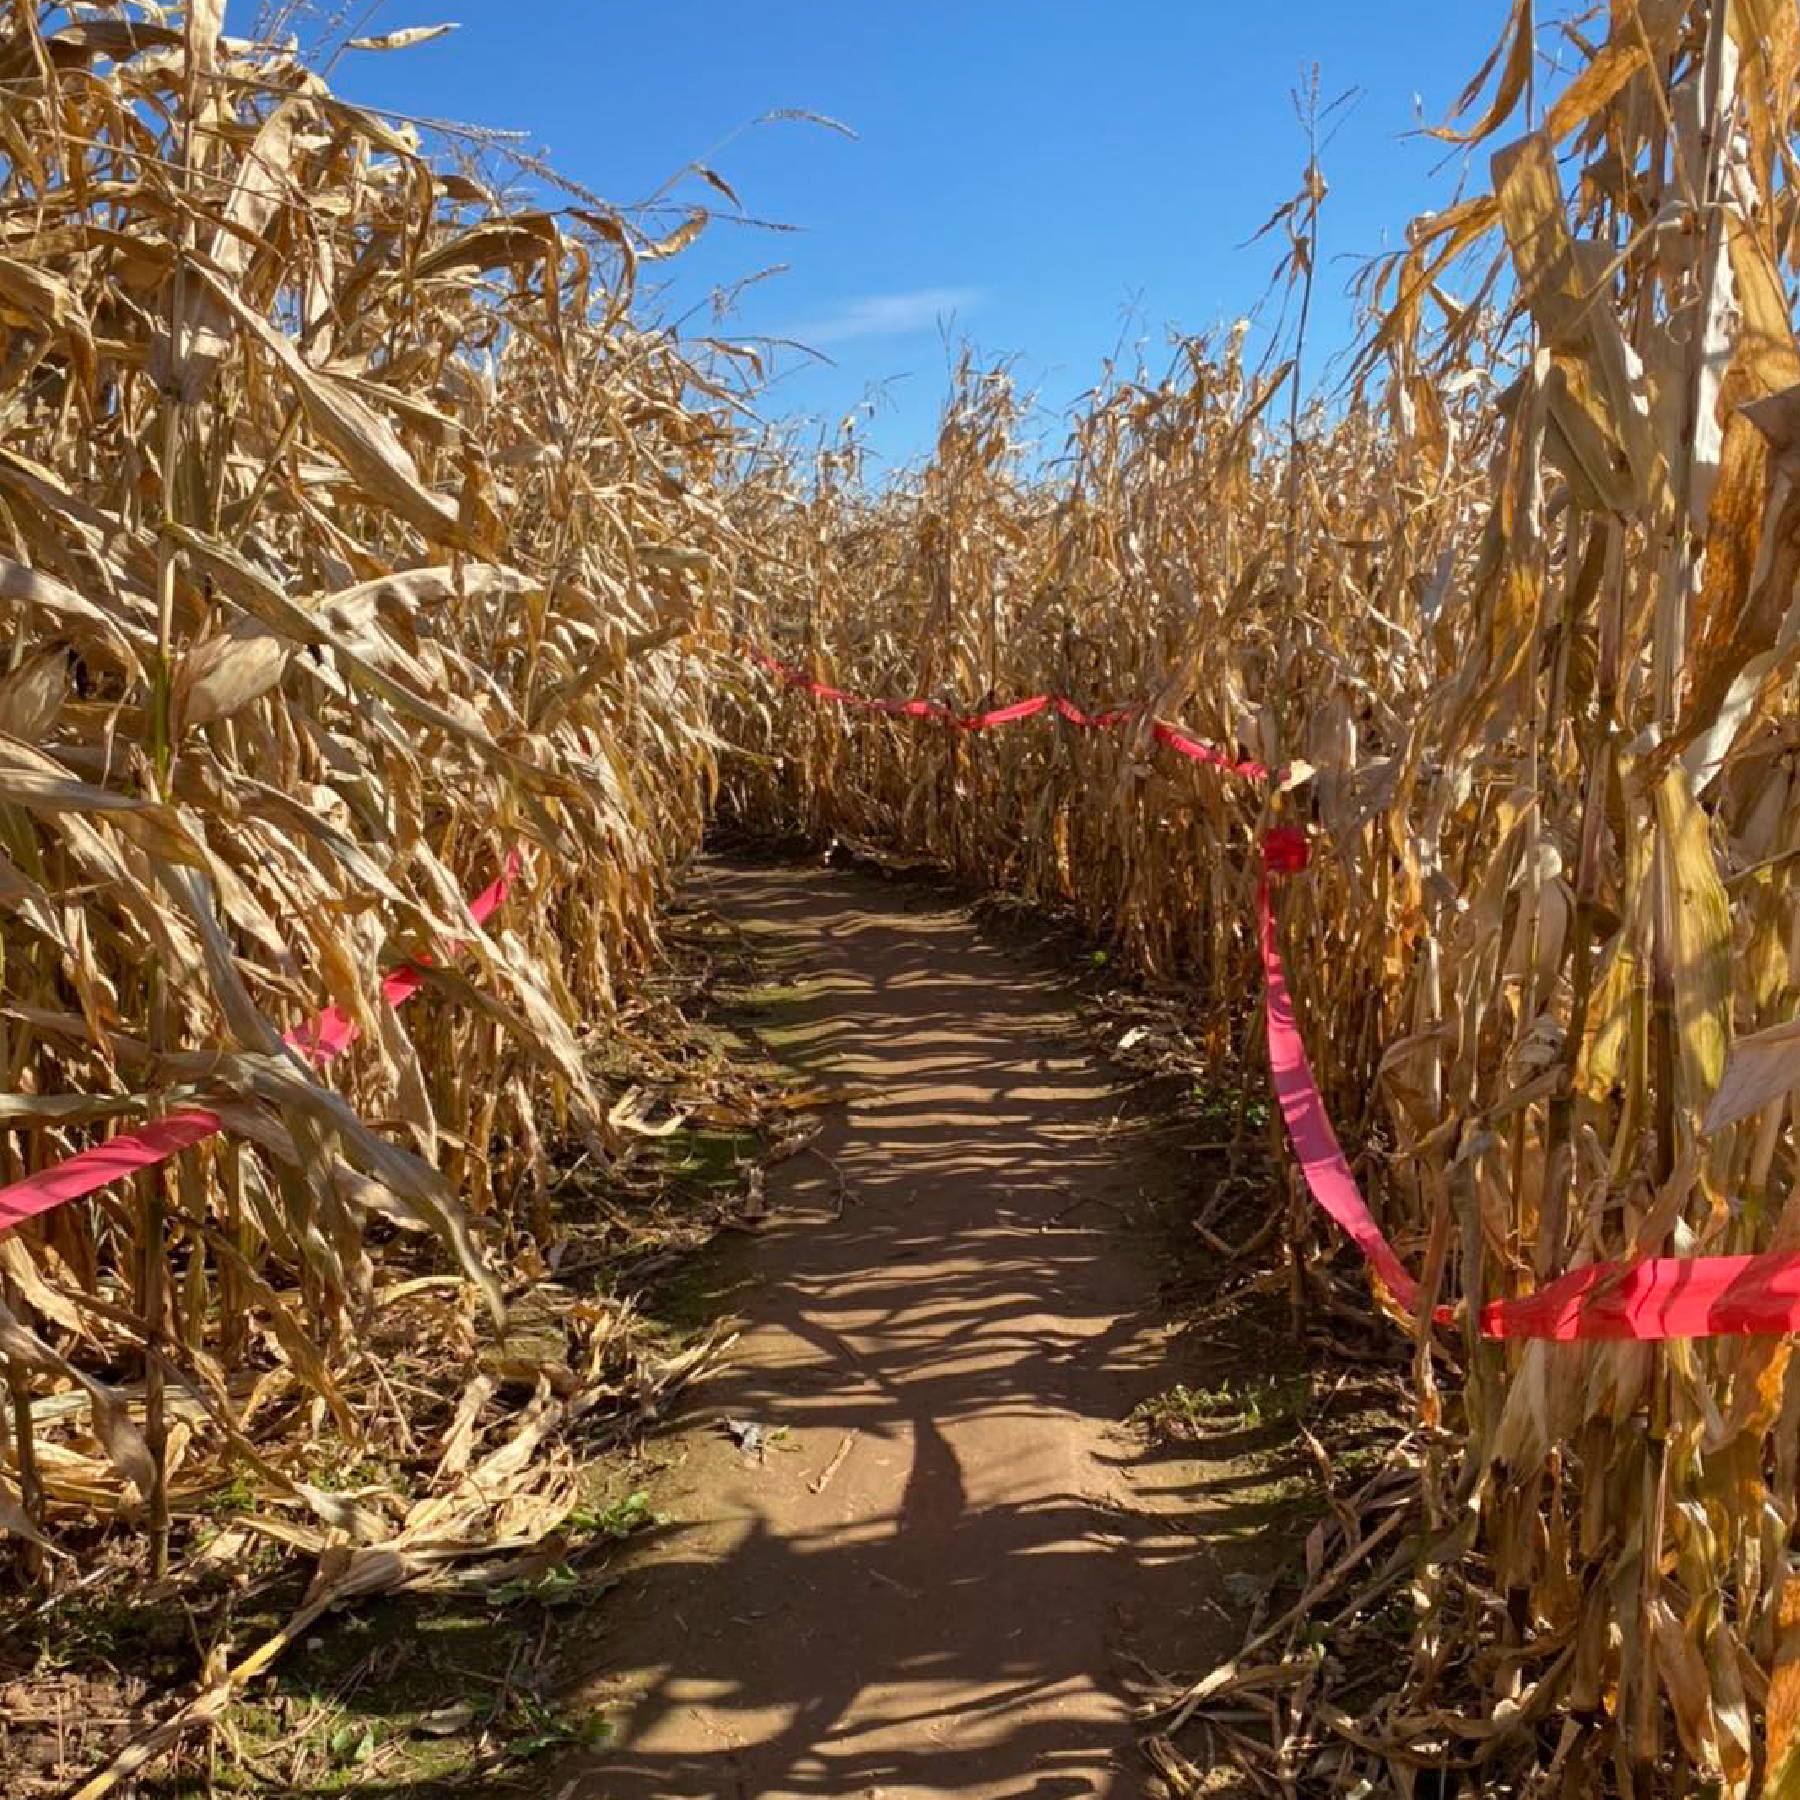 a path through a corn field